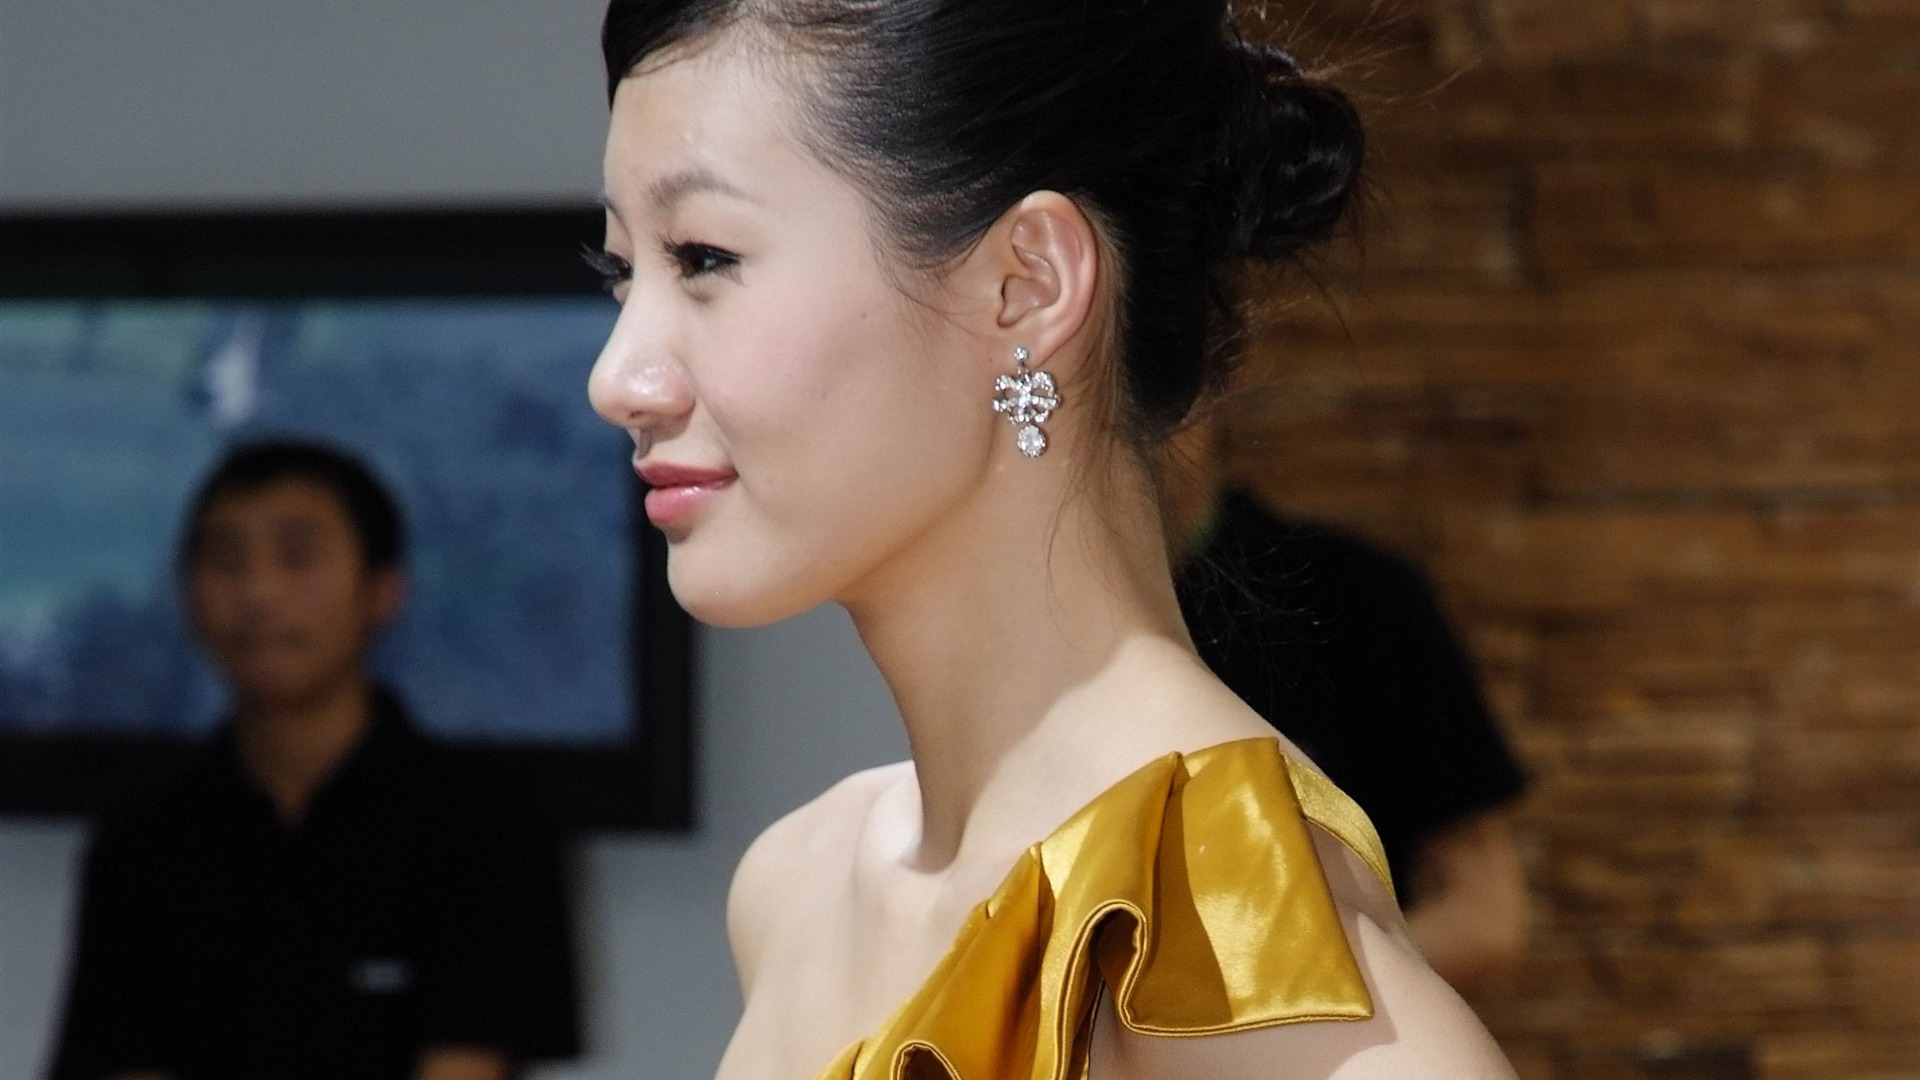 2010北京国际车展 美女车模 (螺纹钢作品)13 - 1920x1080